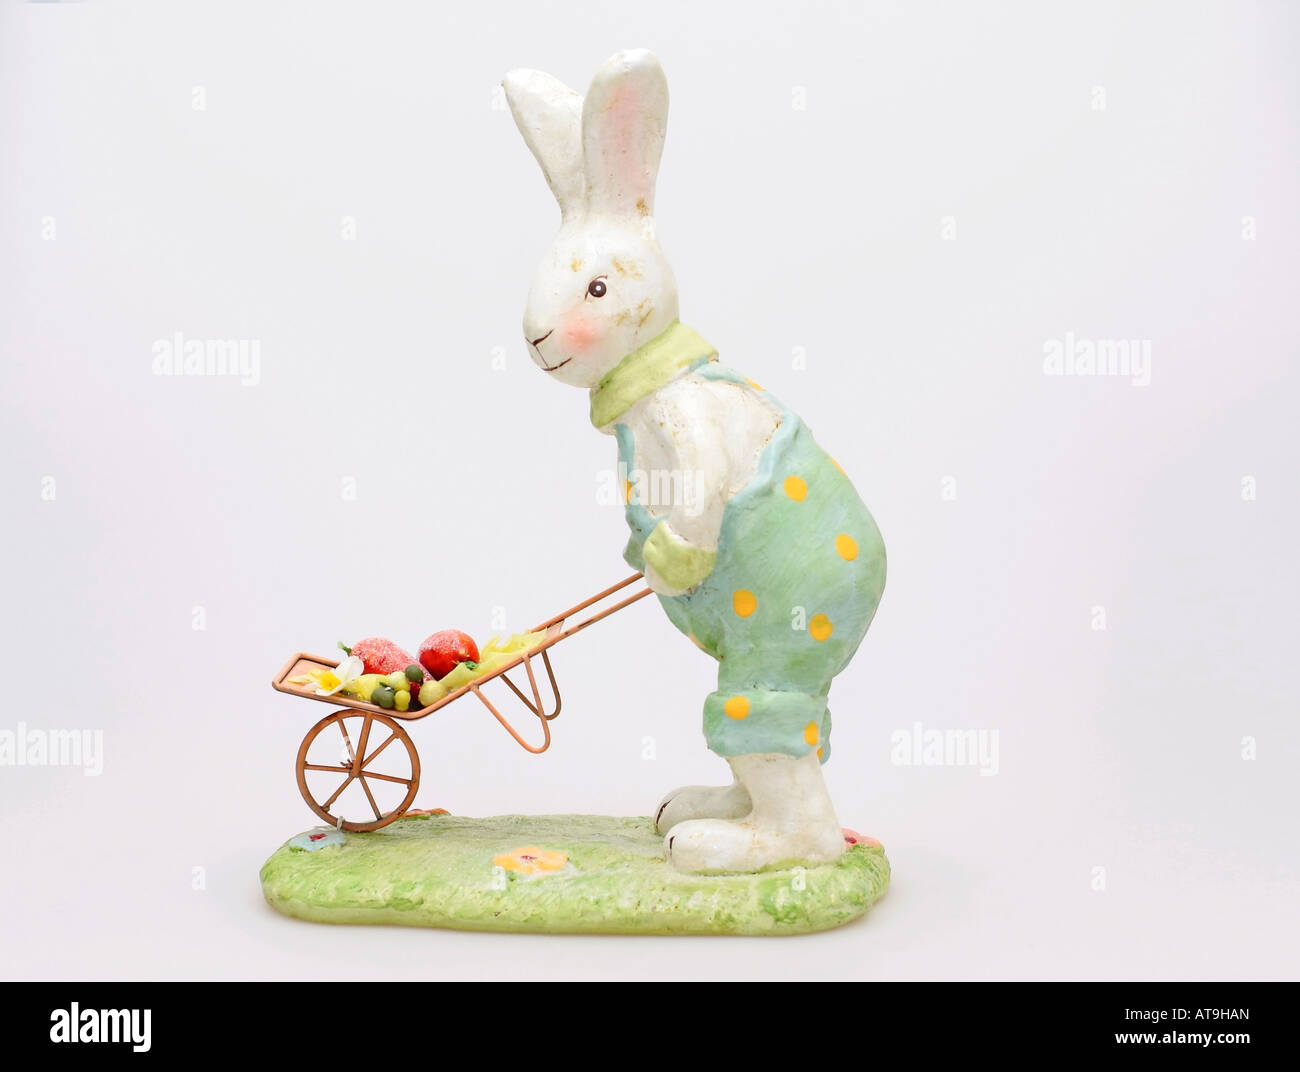 Ein Keramikmodell eines niedlichen Hasen, das einen Schubkarren drückt Stockfoto